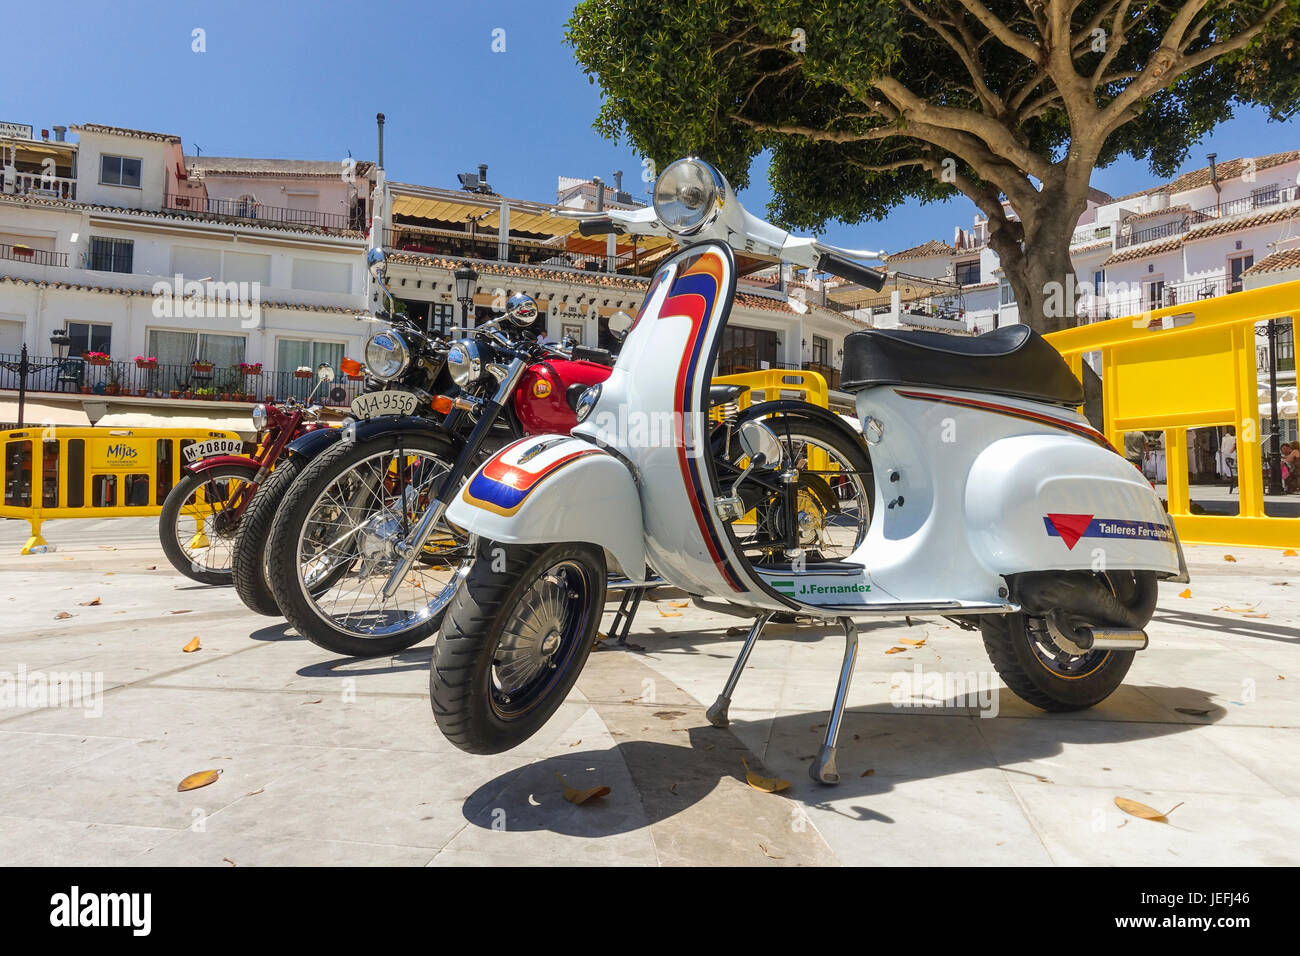 Fila di biciclette classiche con scooter Vespa davanti, sul visualizzatore in corrispondenza di una classica motocicletta incontro a Mijas, Andalusia, Spagna. Foto Stock